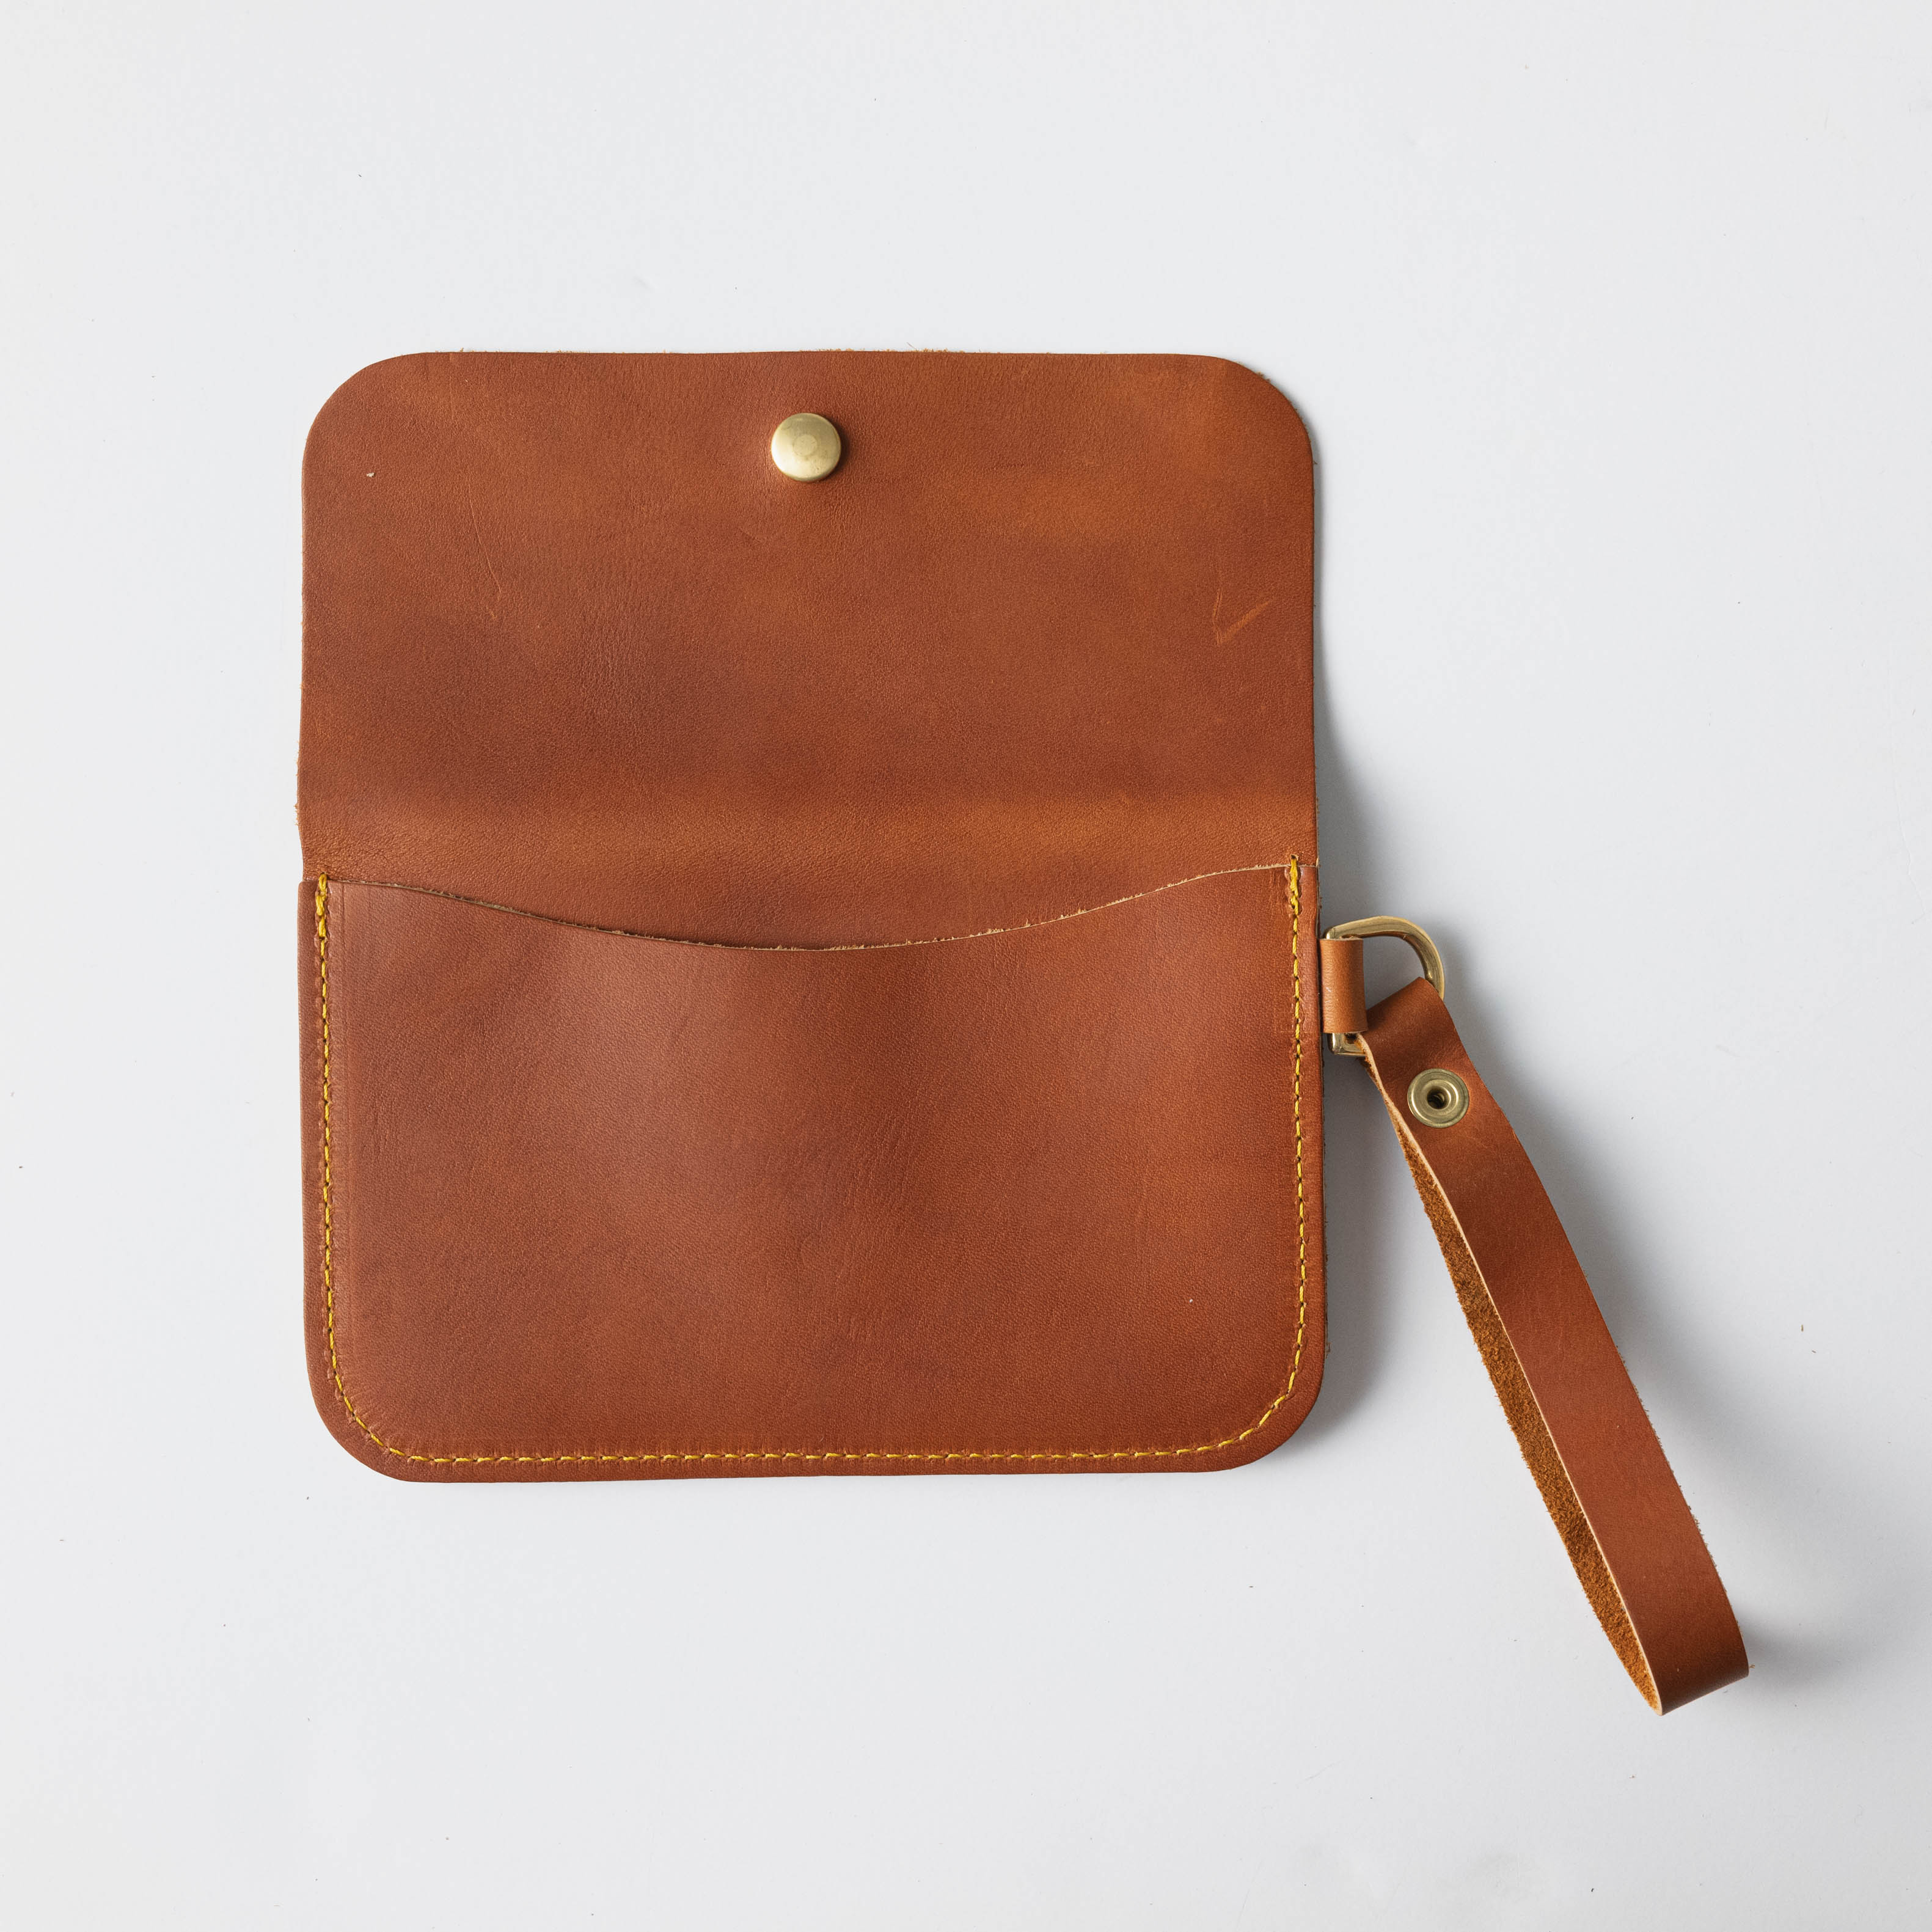 KMM & Co Leather Envelope Clutch